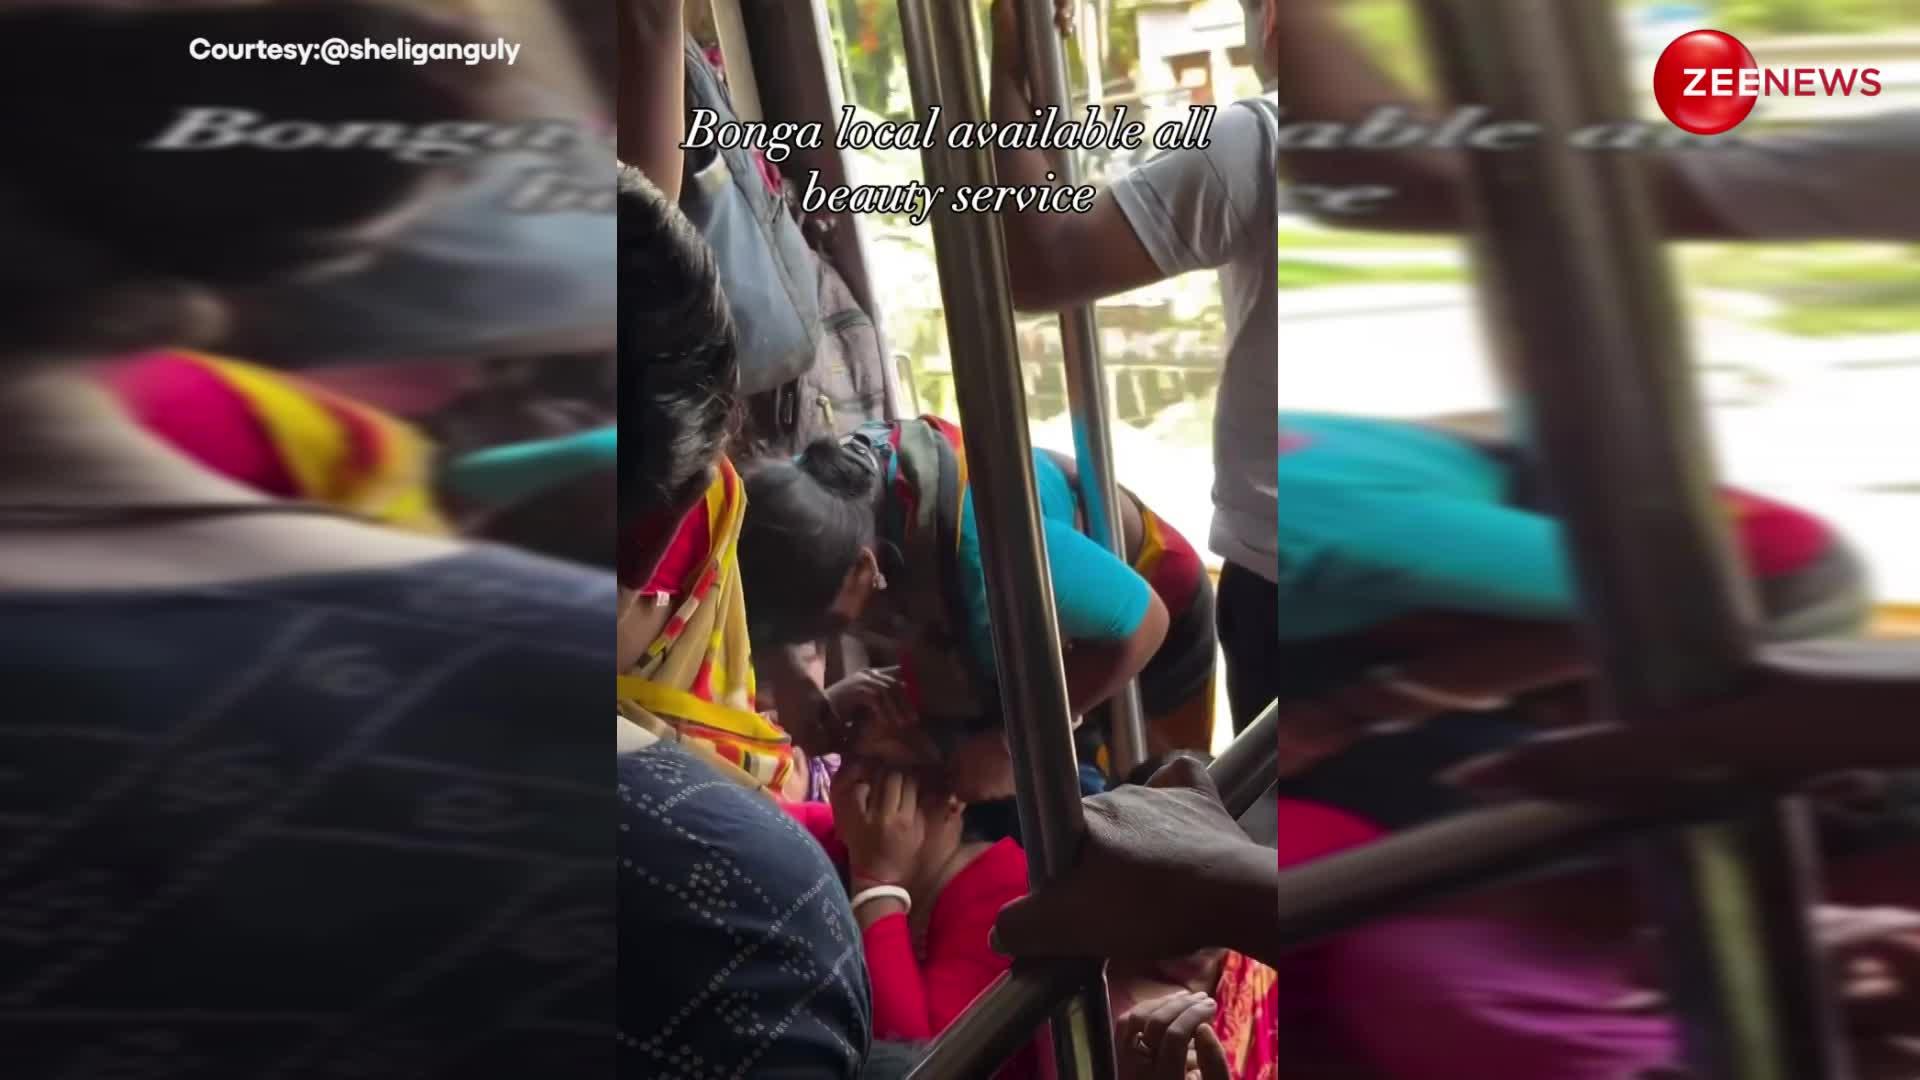 इंडिया में सब मुमकिन है! लोकल ट्रैन के अंदर खुला ब्यूटी पार्लर, टाइम पास करने के लिए आइब्रो बनाती दिखी महिला